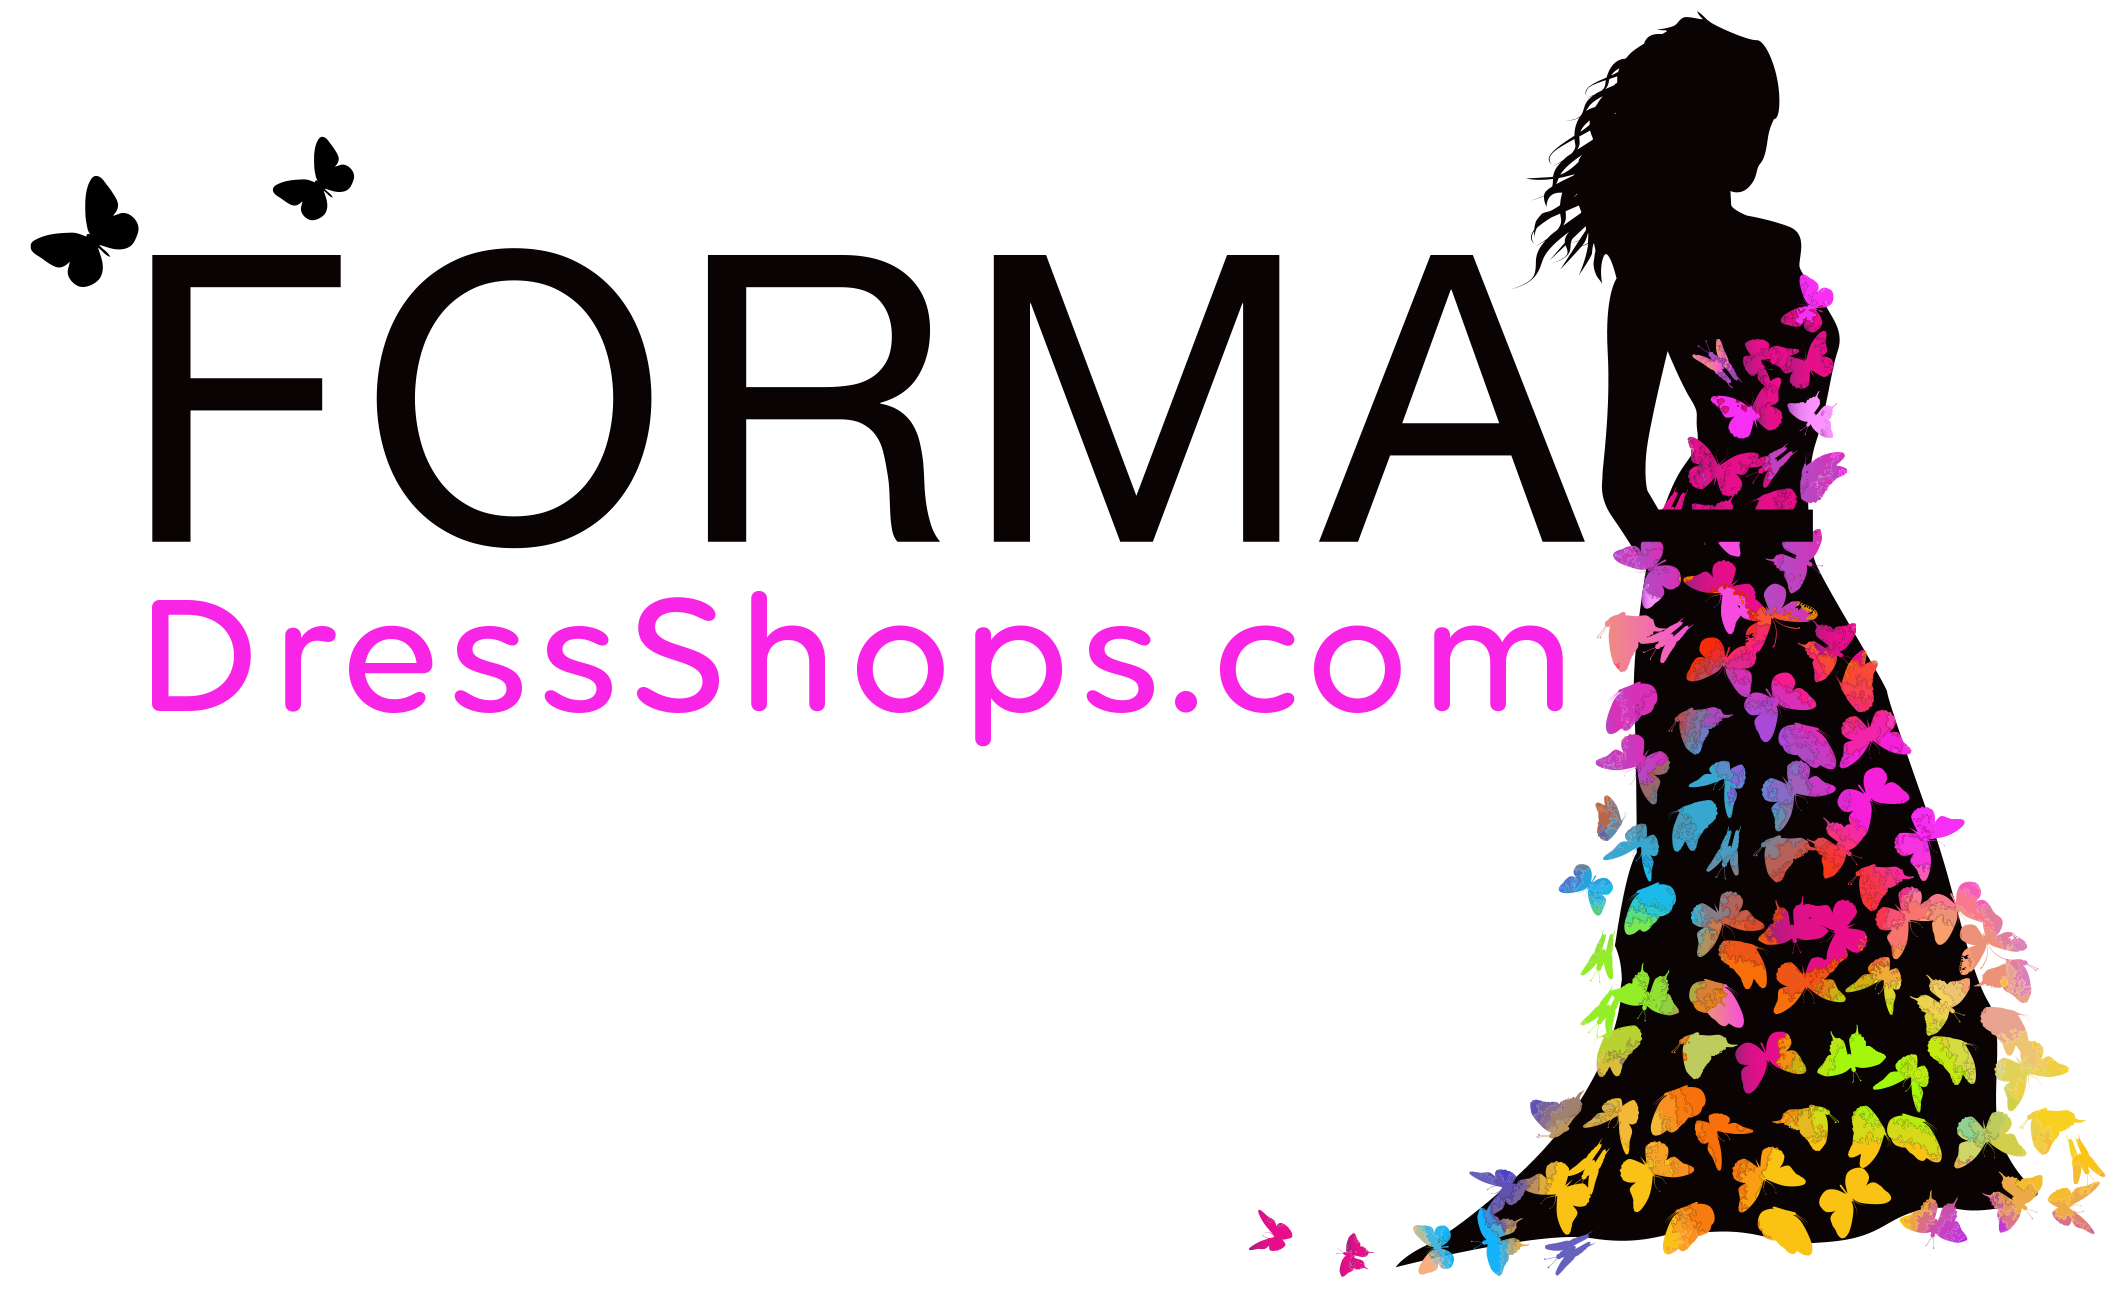 website for formal dresses